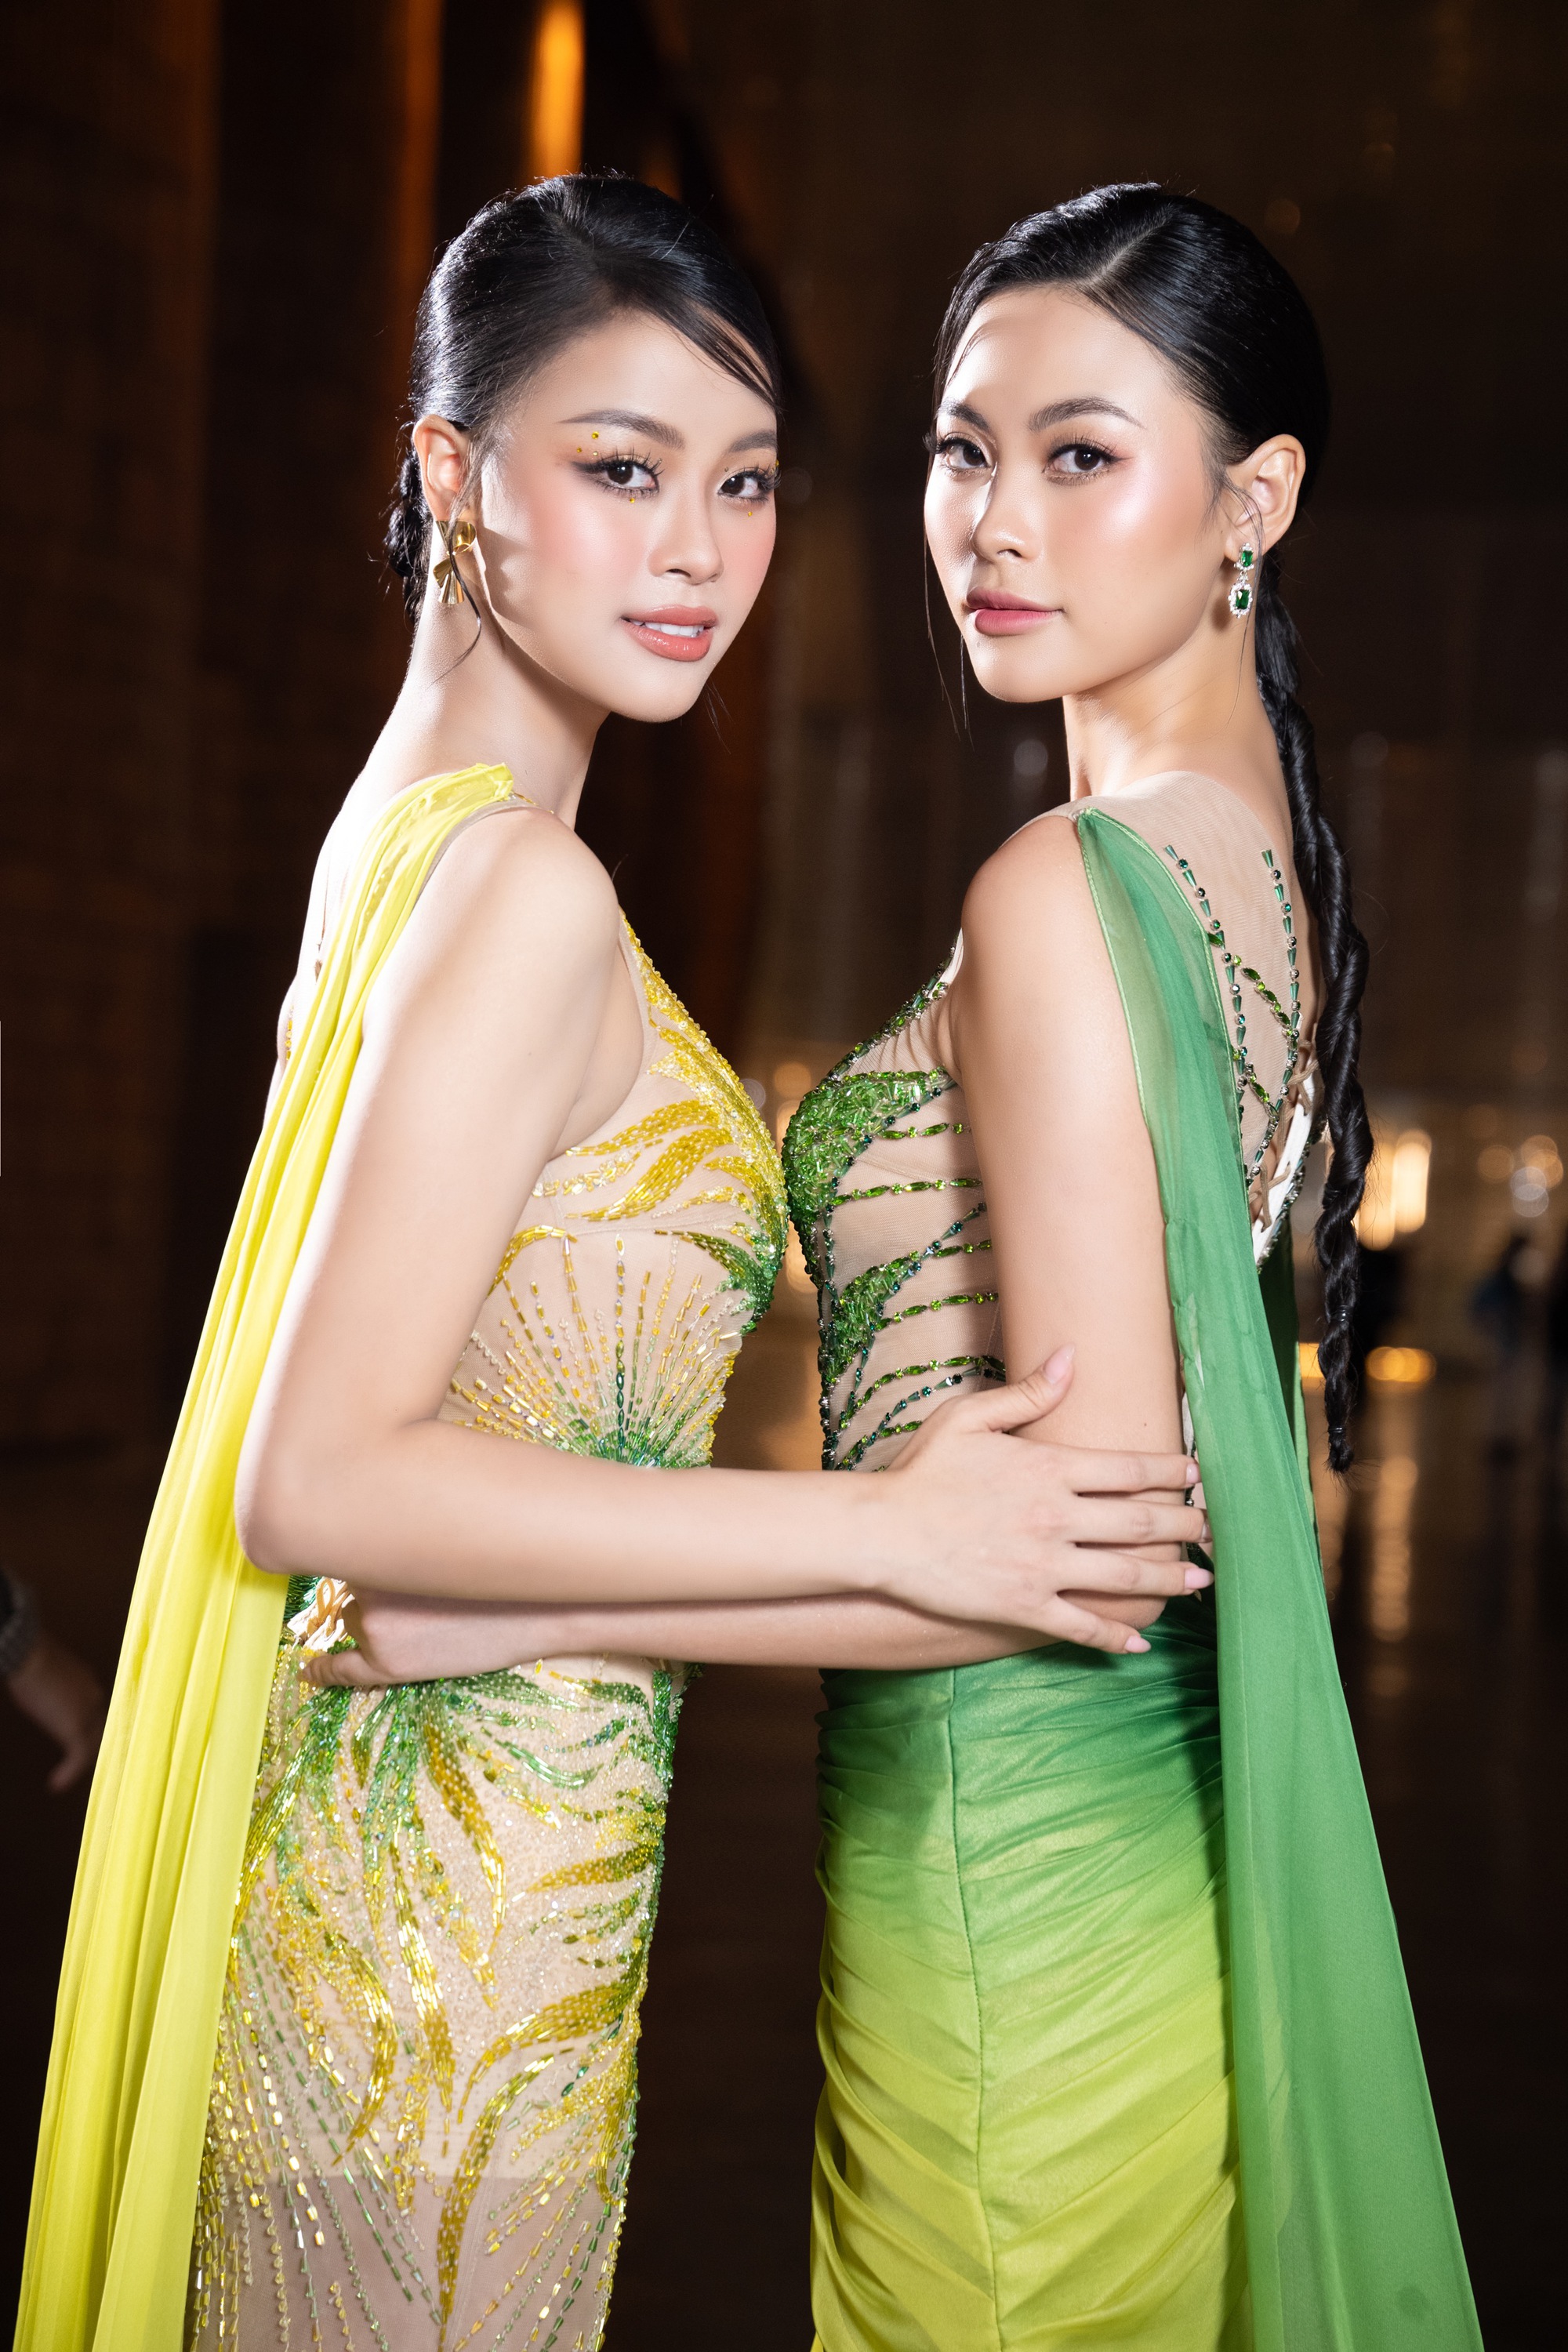 Á hậu Đào Hiền và chị gái Đào Hà gây ấn tượng trên sàn diễn thời trang - Ảnh 1.